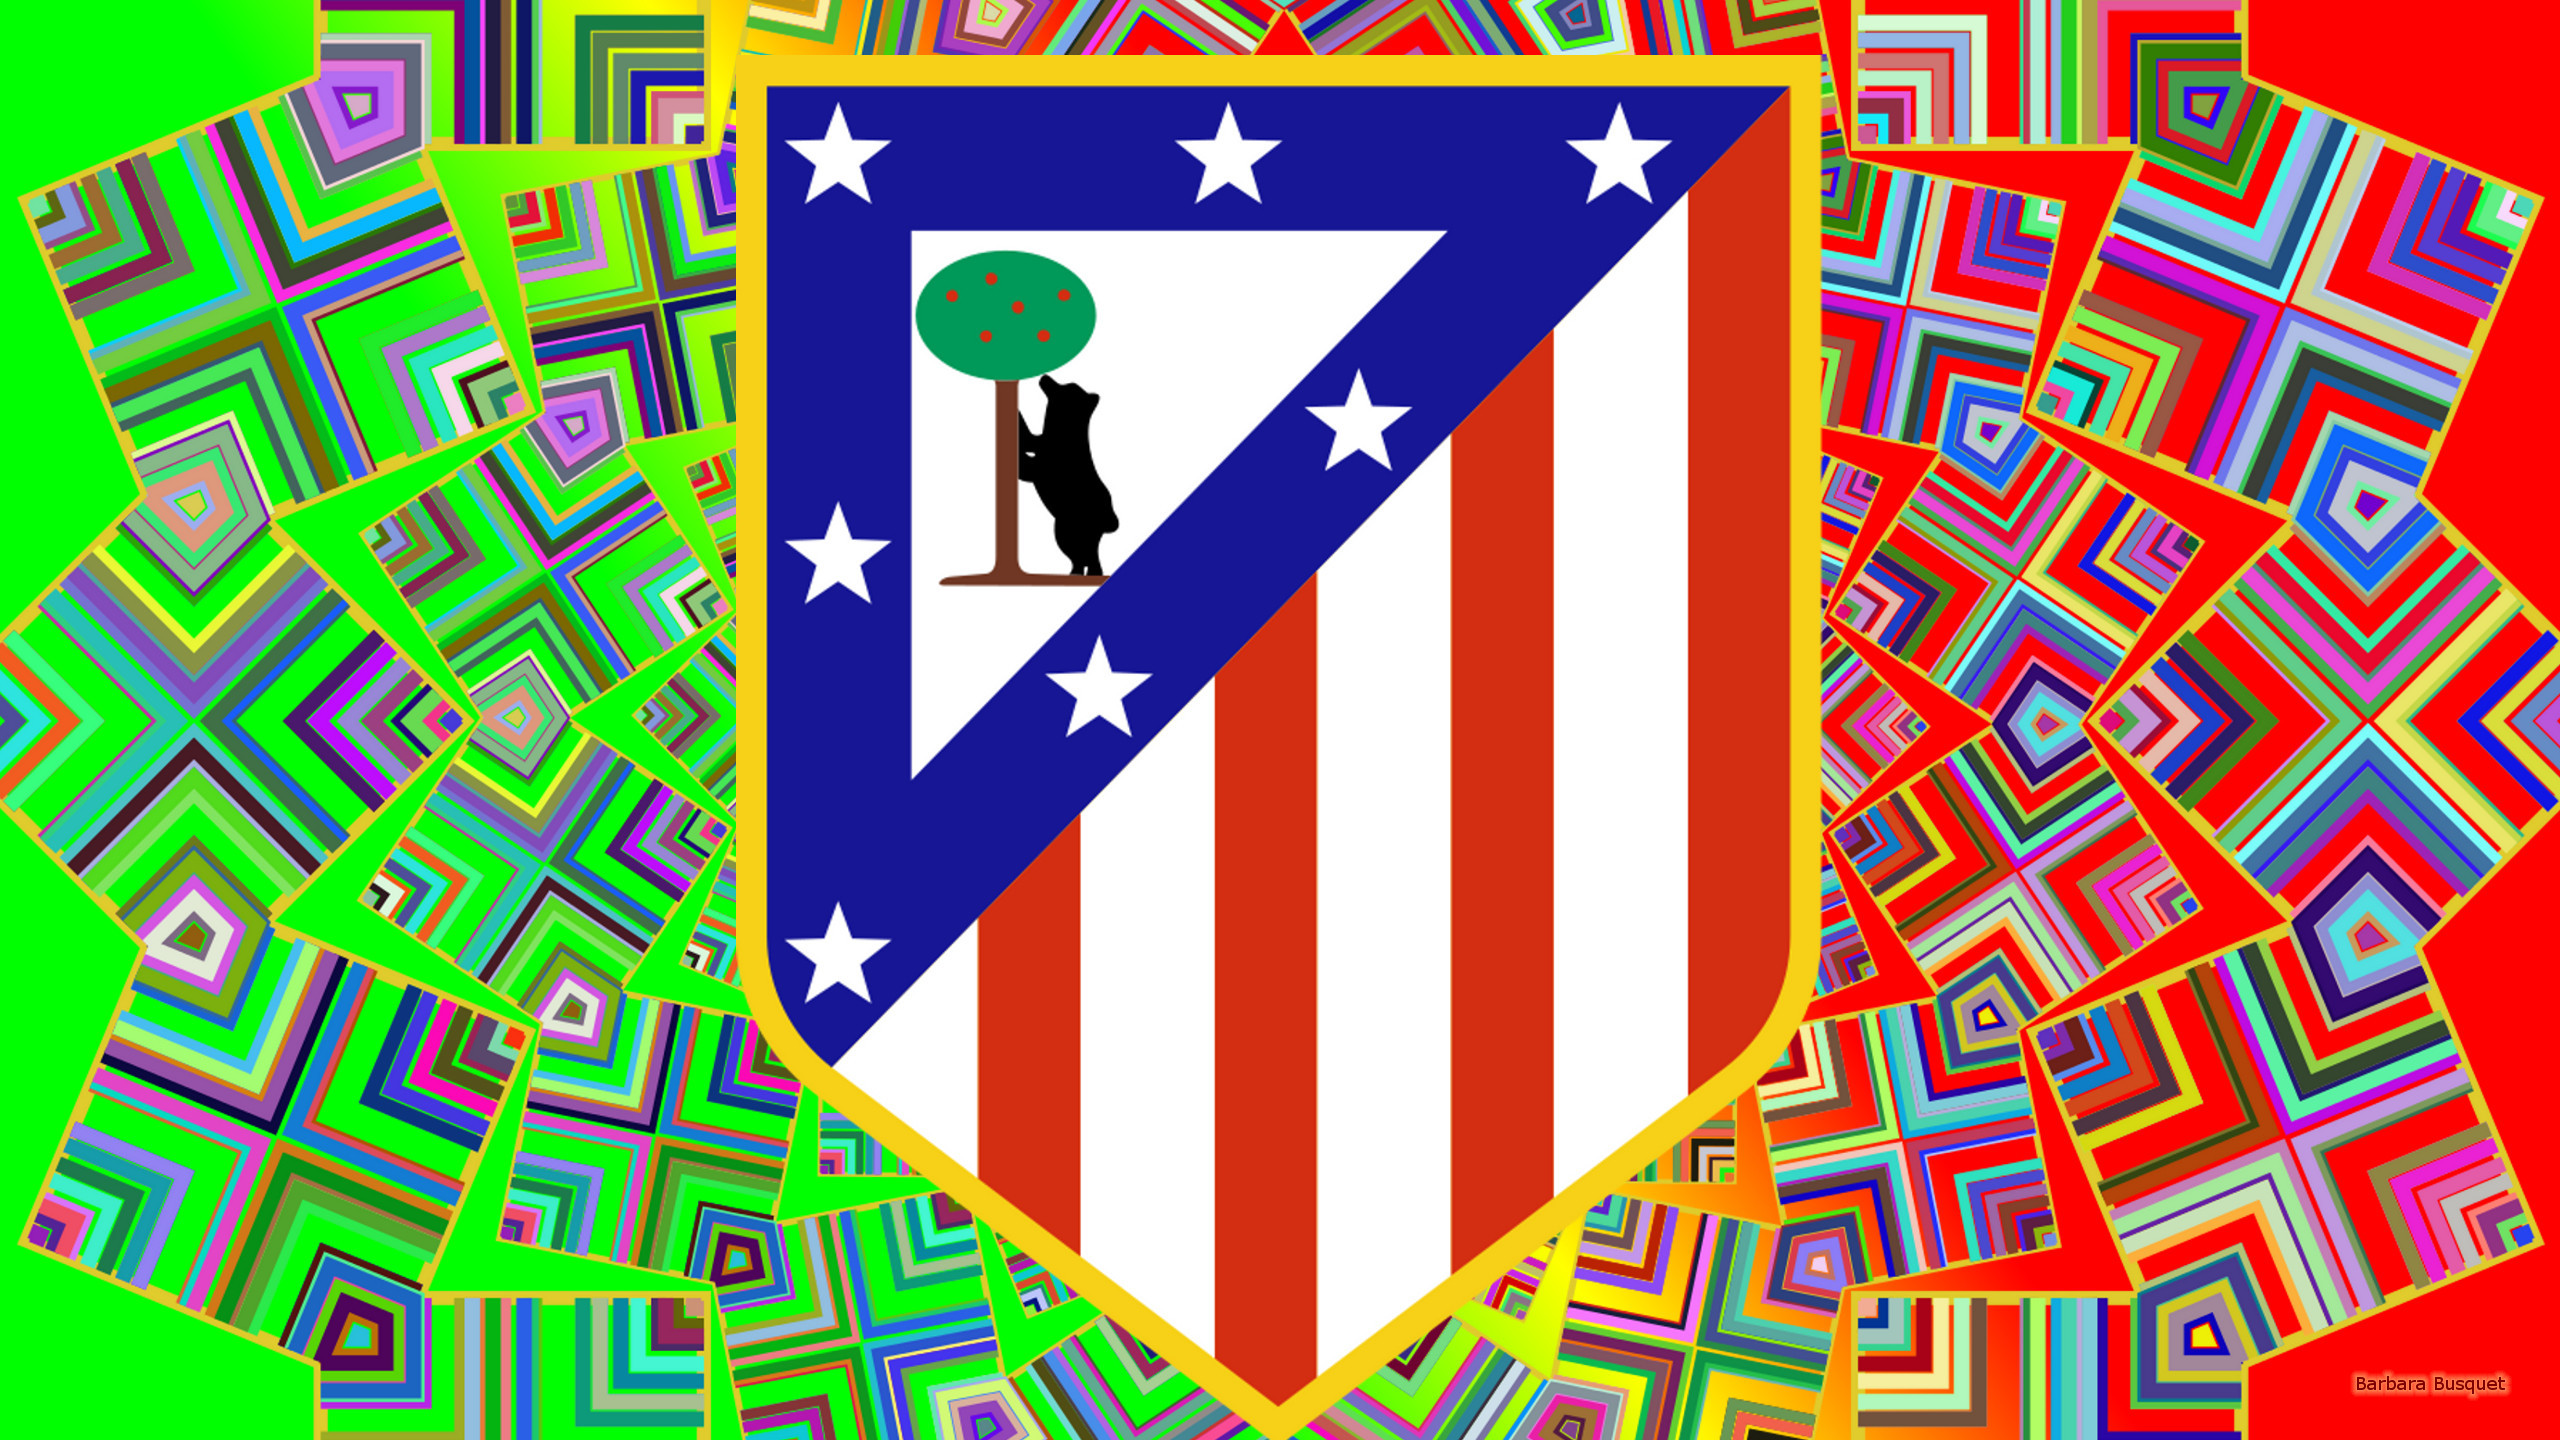 2560x1440 Atletico Madrid football club wallpaper